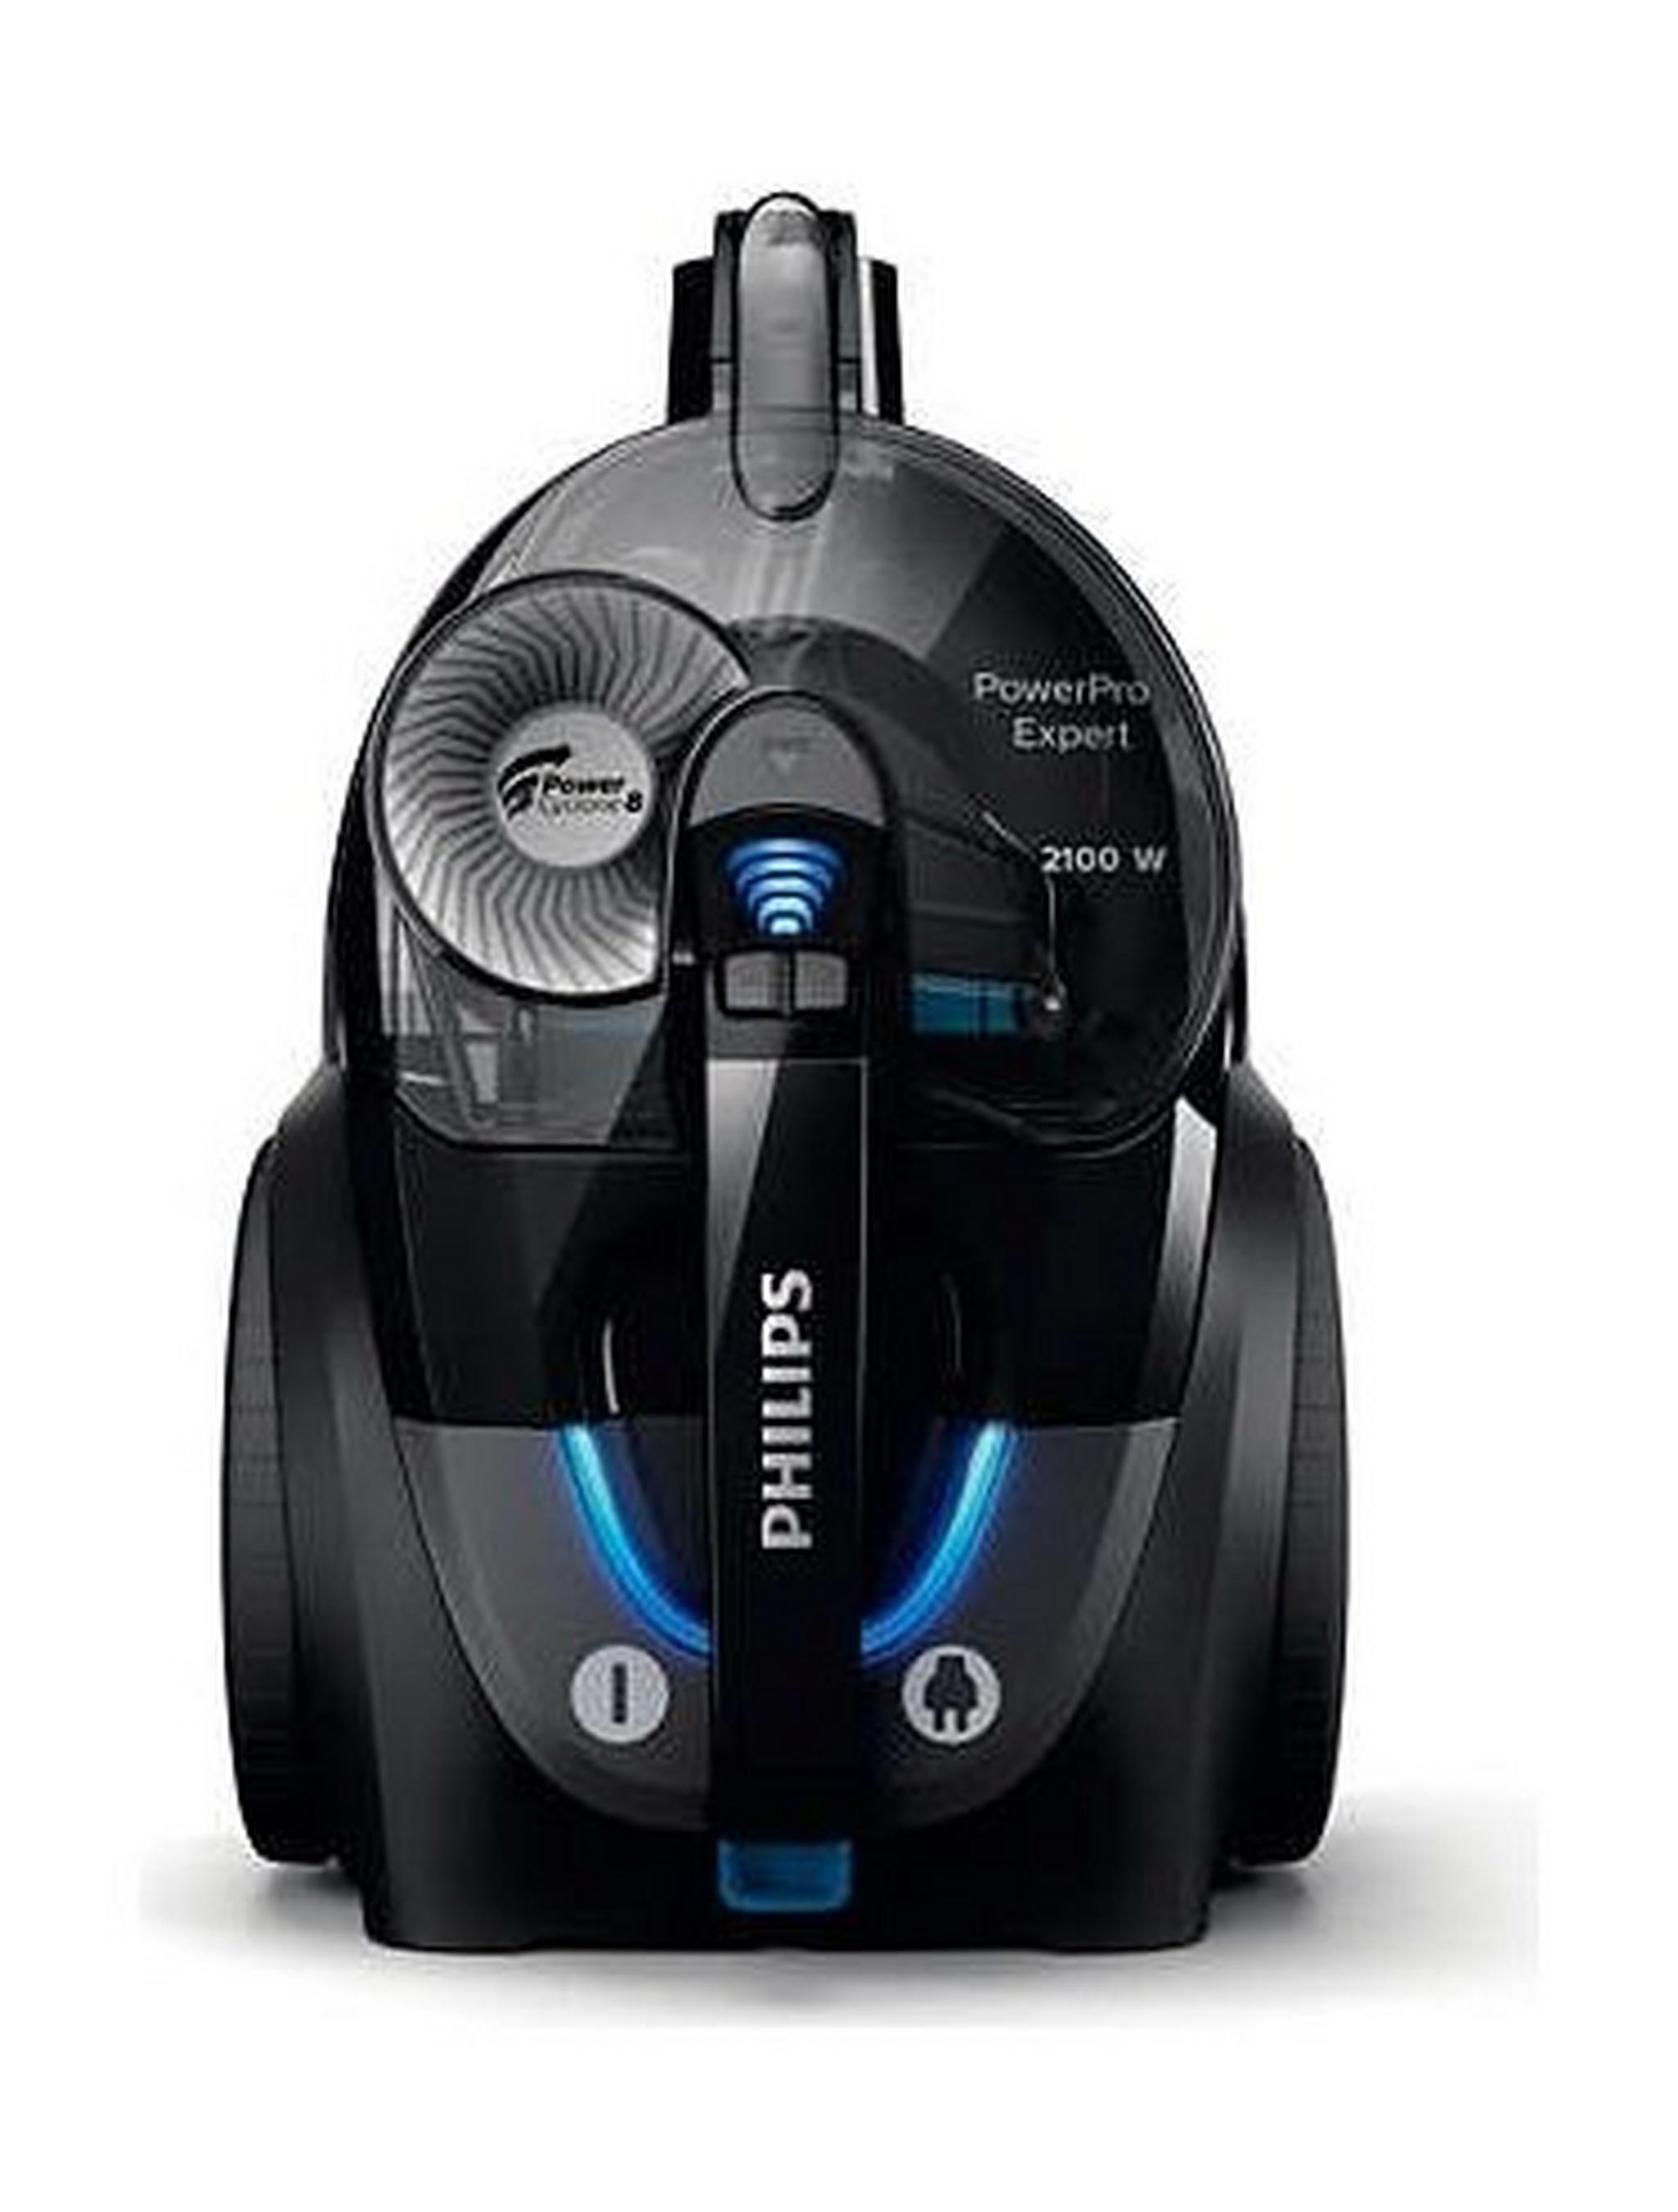 Philips PowerPro Expert Bagless Vacuum Cleaner,2100W, 2Liters, FC9732 - Black